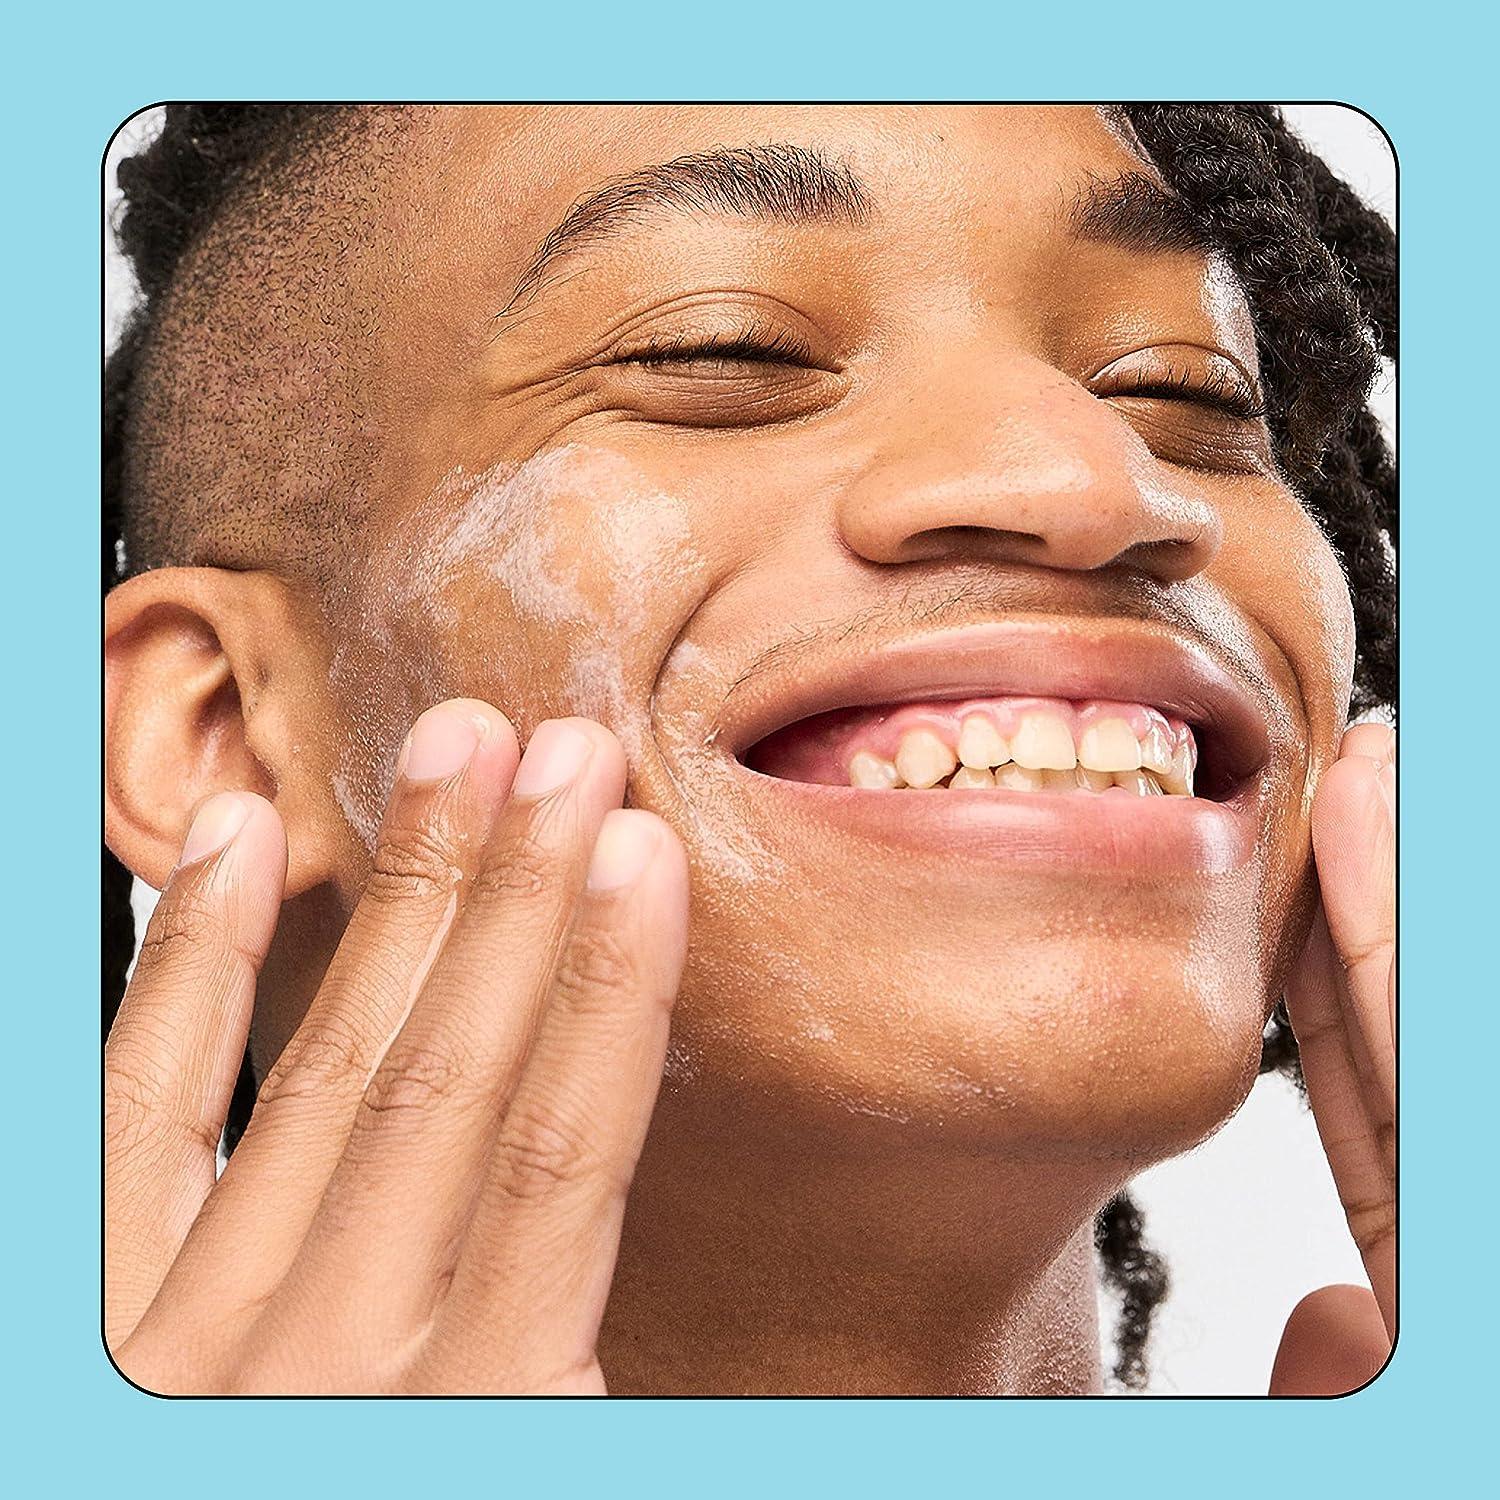 2) BUBBLE Skincare FRESH START Gel Cleanser~For All Skin Types 1.7 fl oz Ea  New